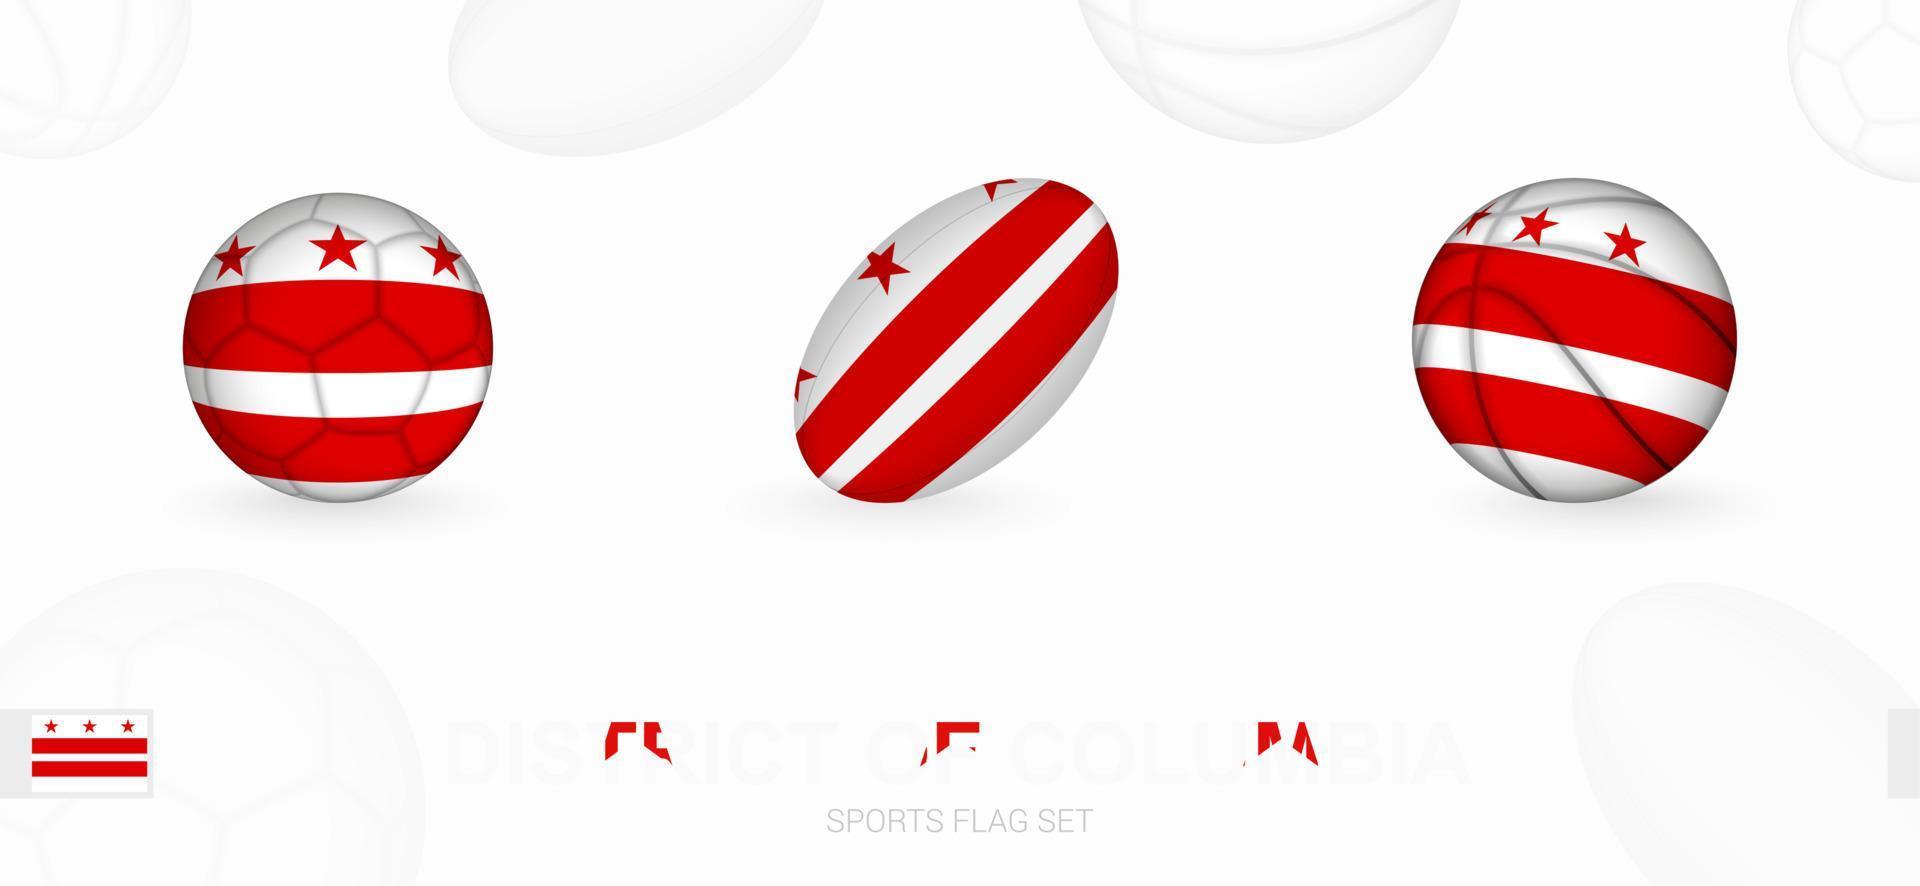 Esportes ícones para futebol, rúgbi e basquetebol com a bandeira do distrito do columbia. vetor